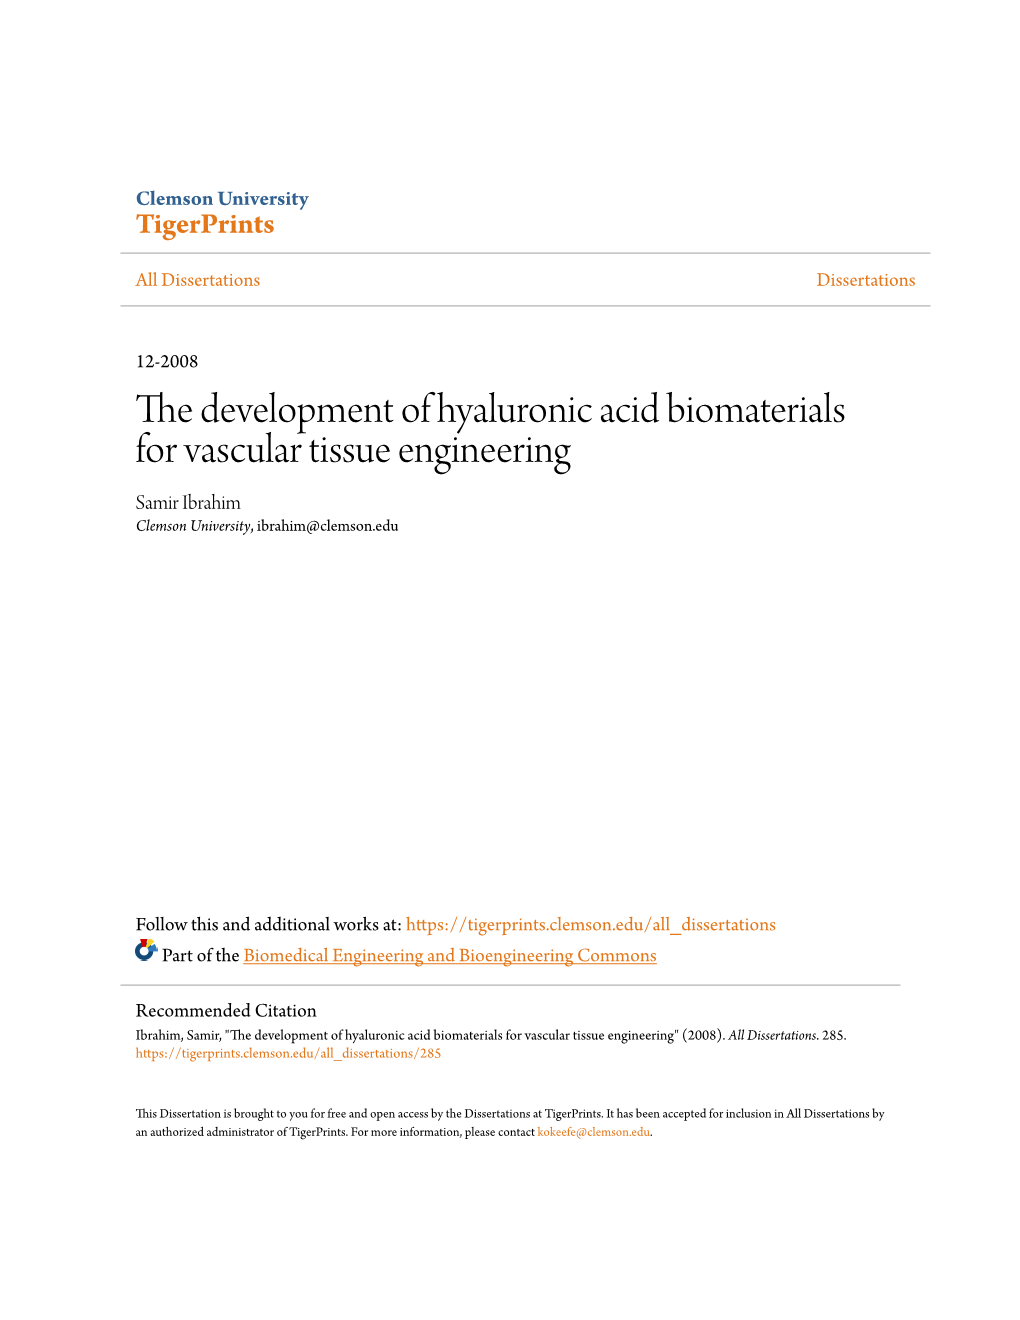 The Development of Hyaluronic Acid Biomaterials for Vascular Tissue Engineering Samir Ibrahim Clemson University, Ibrahim@Clemson.Edu